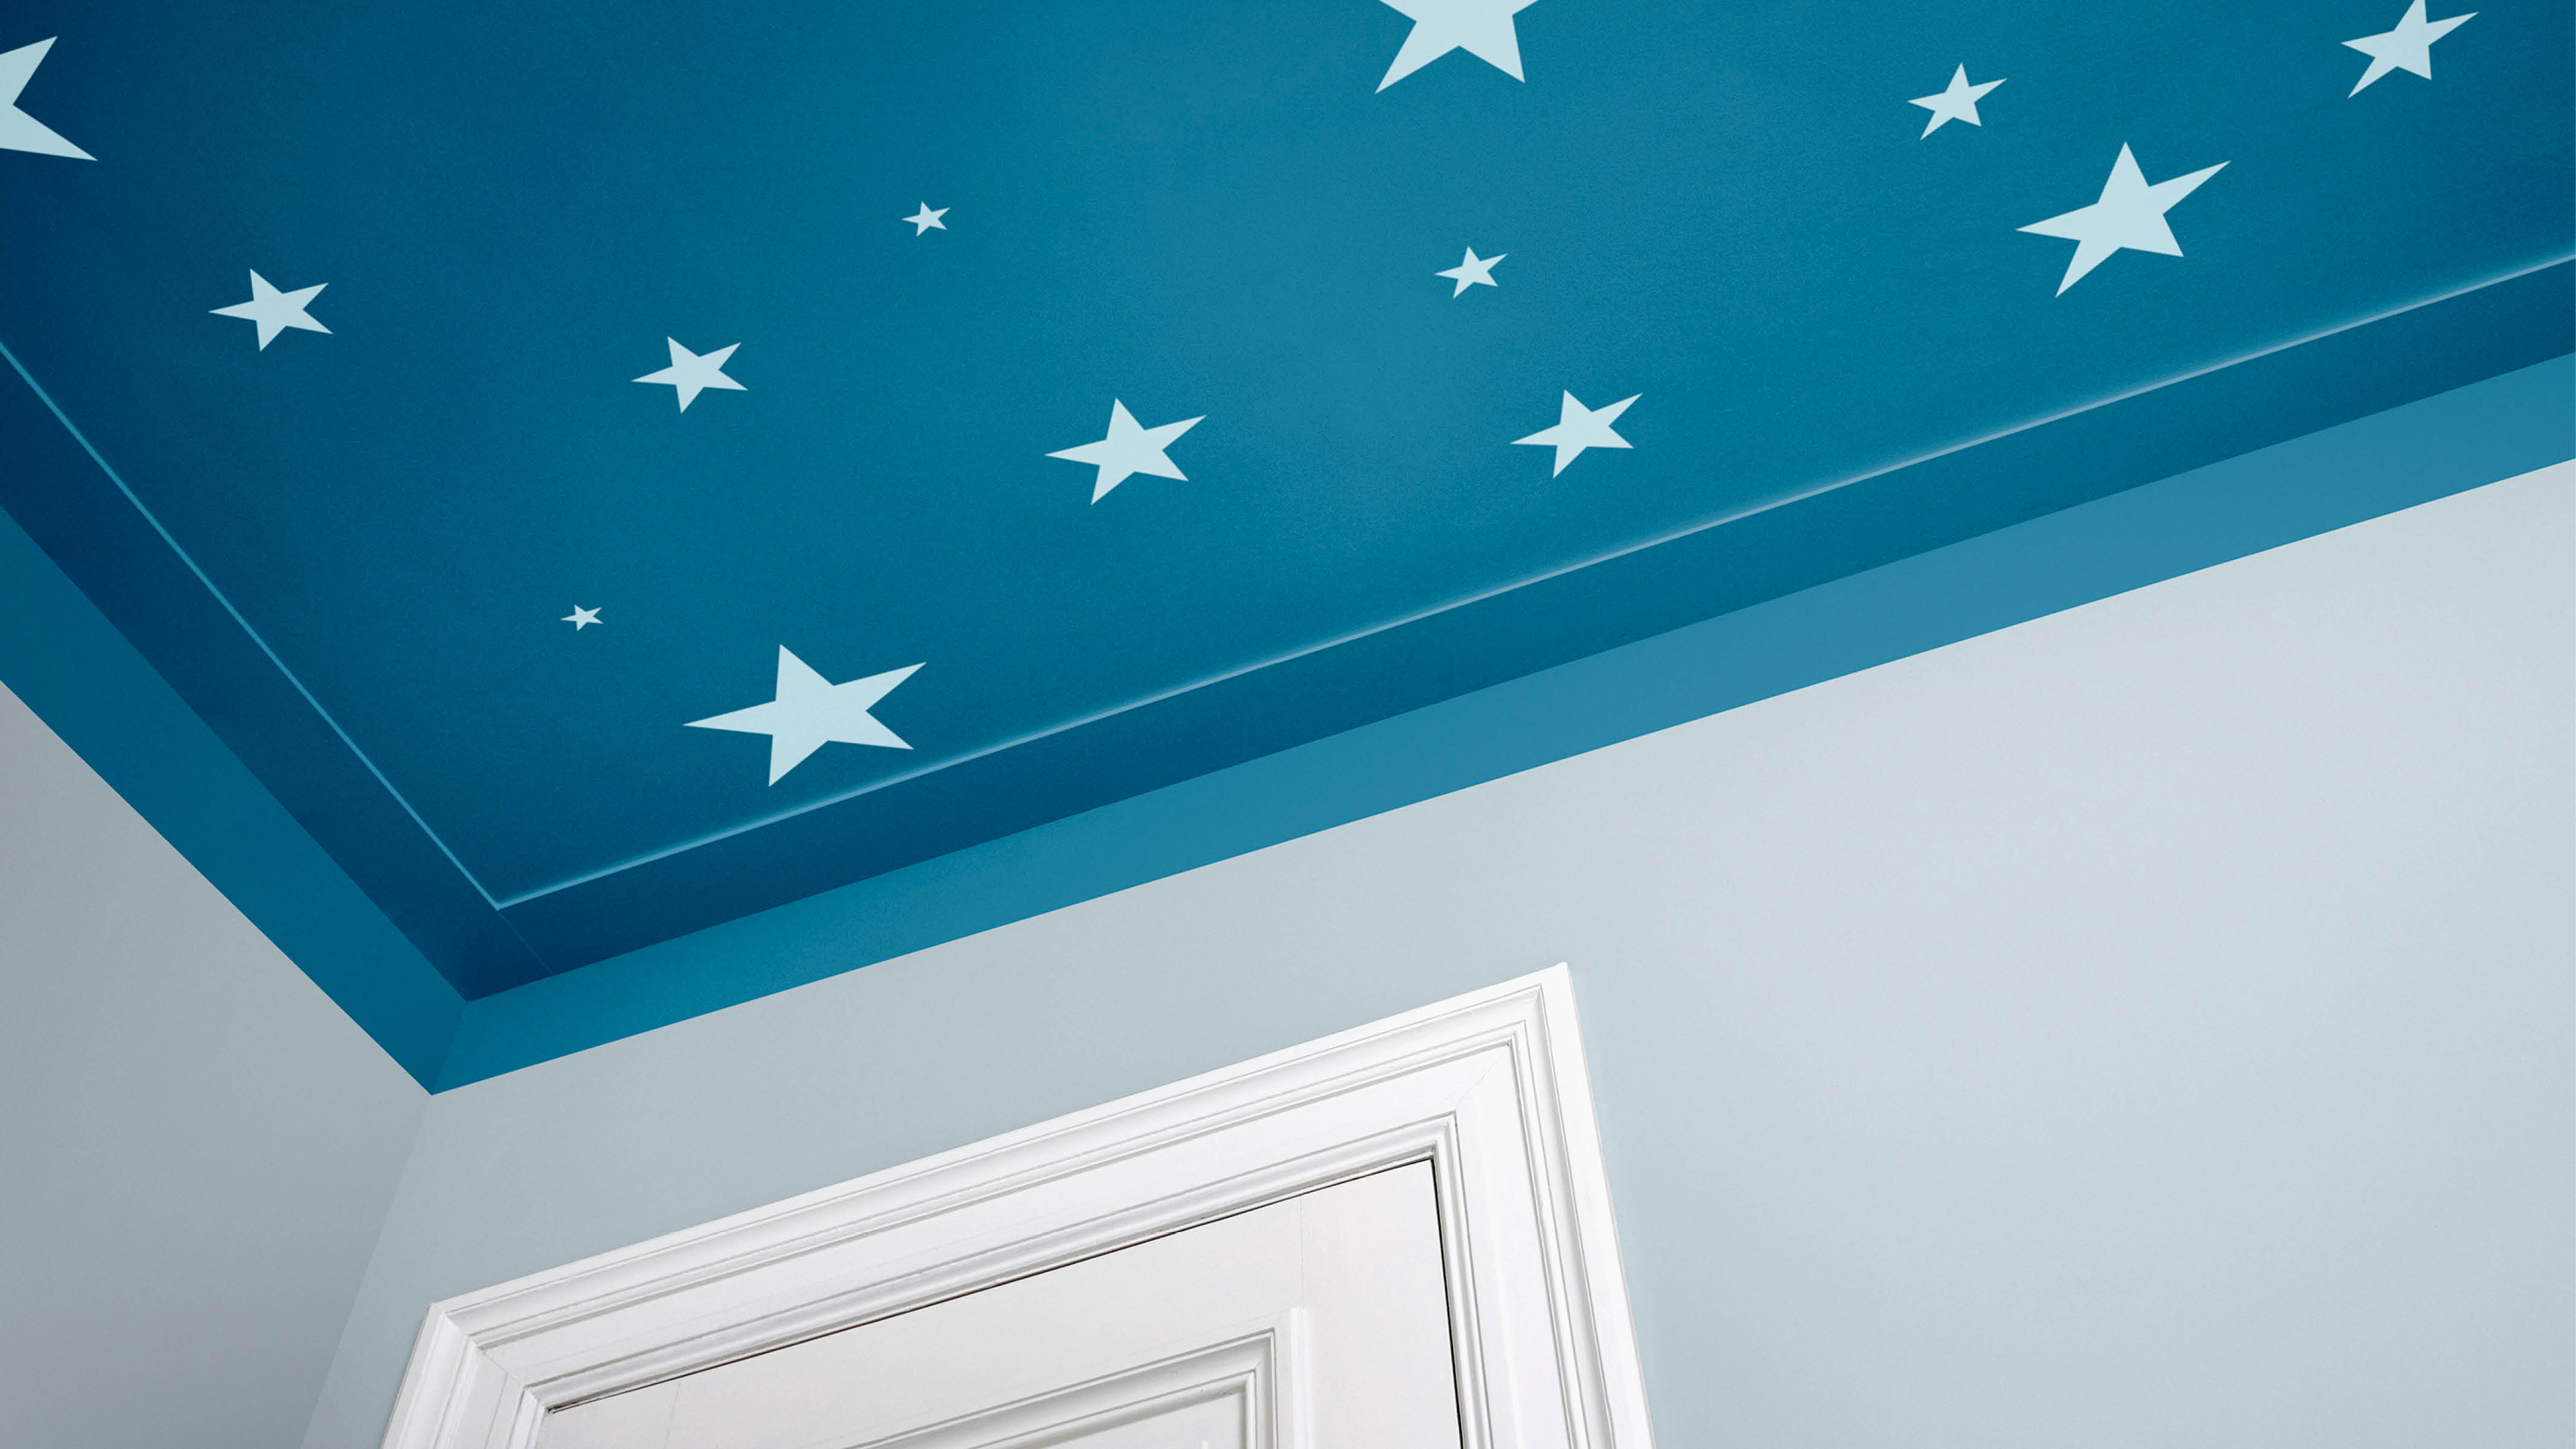 Munculkan Nuansa Langit Di Malam Hari Dengan Lukisan - Four Ceiling Paint , HD Wallpaper & Backgrounds